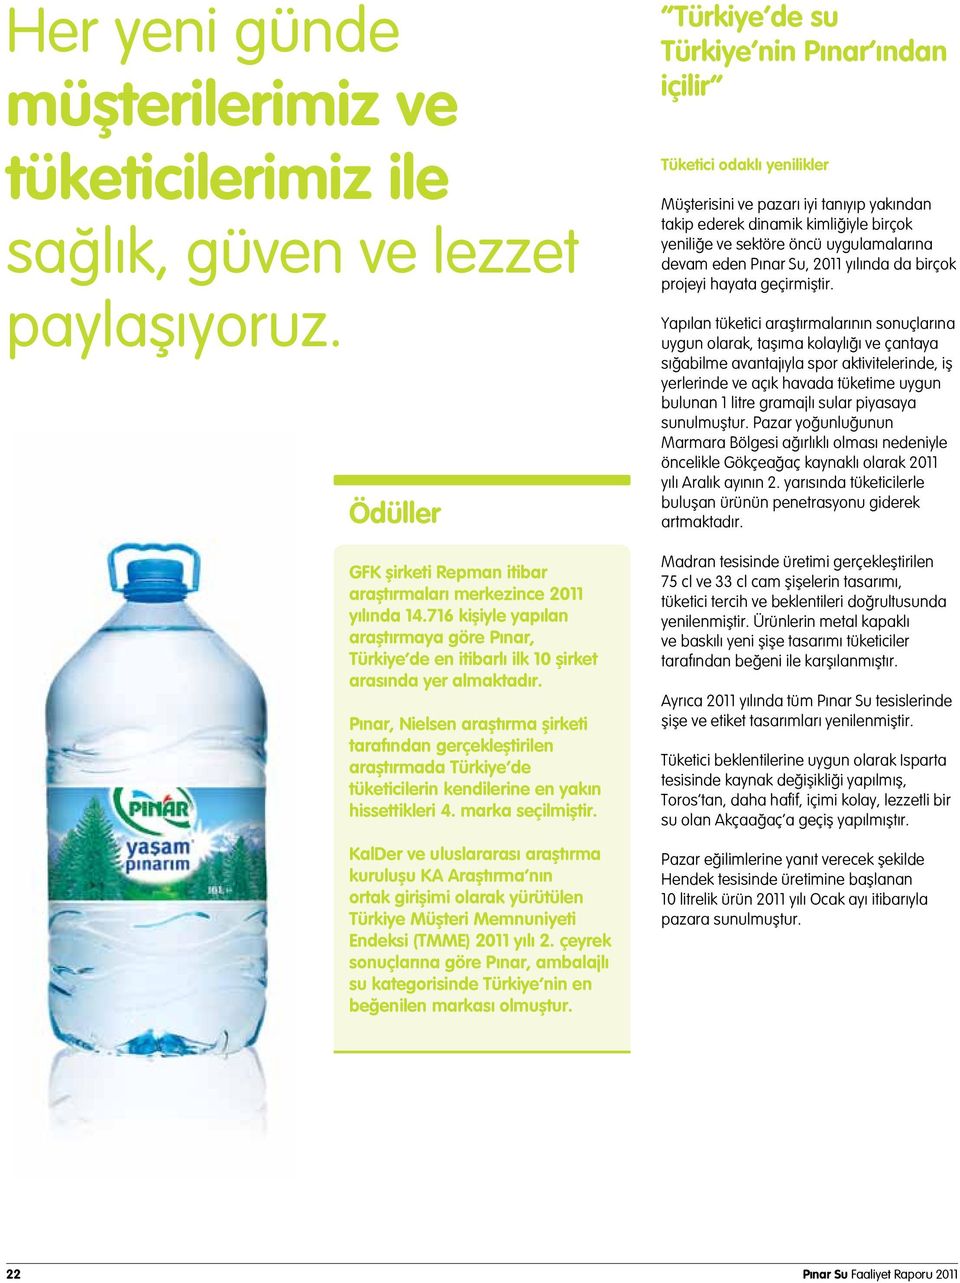 Pınar, Nielsen araştırma şirketi tarafından gerçekleştirilen araştırmada Türkiye de tüketicilerin kendilerine en yakın hissettikleri 4. marka seçilmiştir.